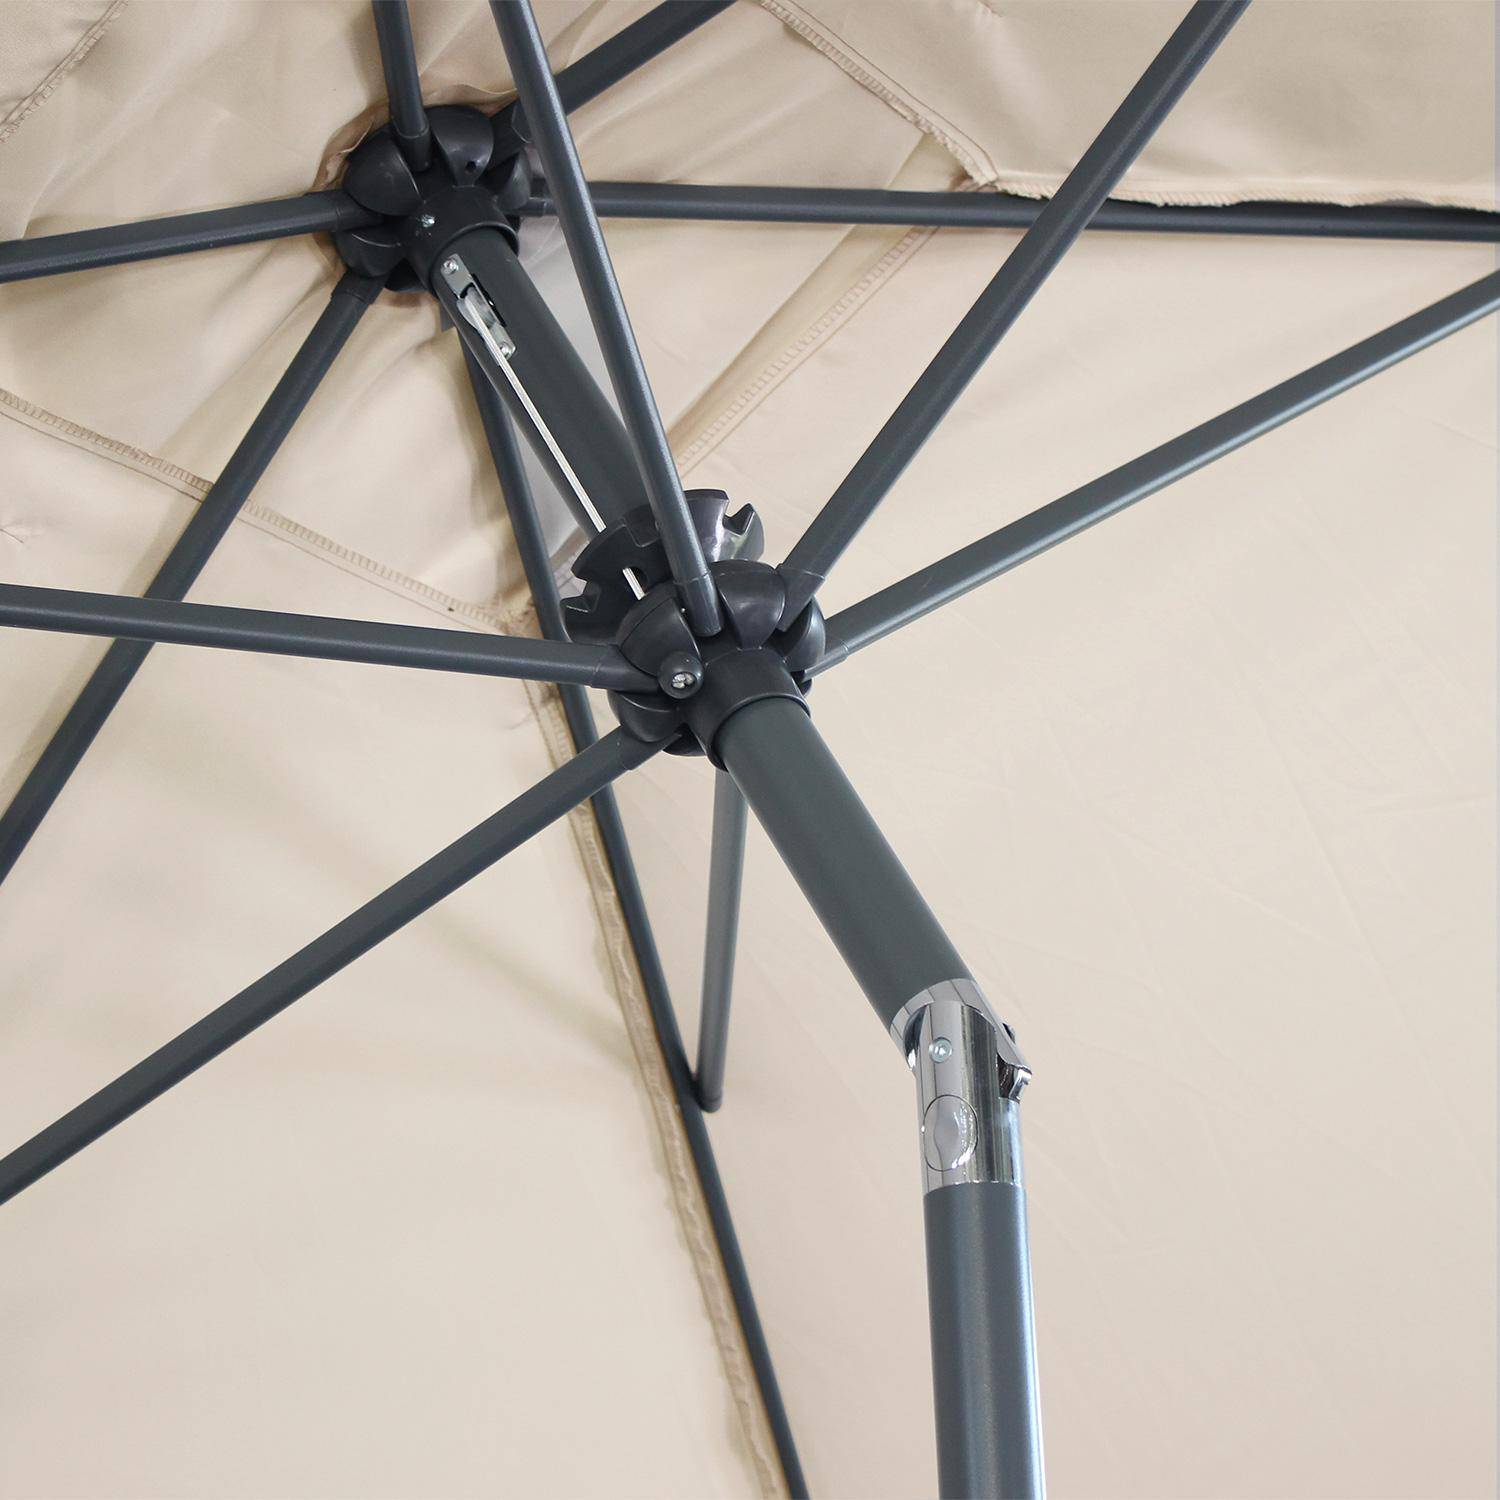 Ombrellone dritto, rettangolare, dimensioni 2x3m - modello: Touquet, colore: Sabbia - palo centrale in alluminio, orientabile, e manovella di apertura Photo6